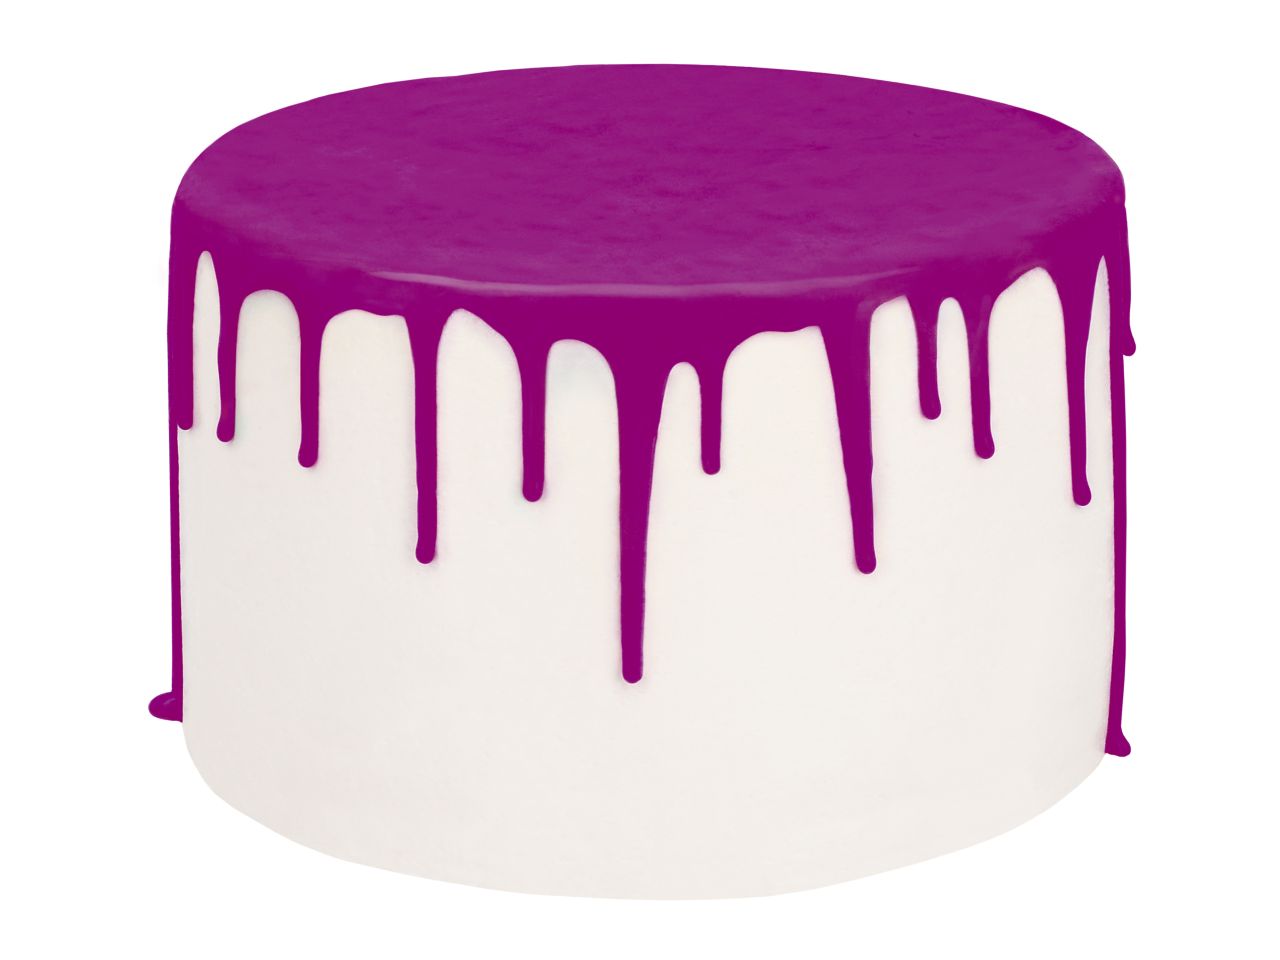 Drip Cake-Glasur Violet, Purpur, inkl. Spritzflasche, 250 g